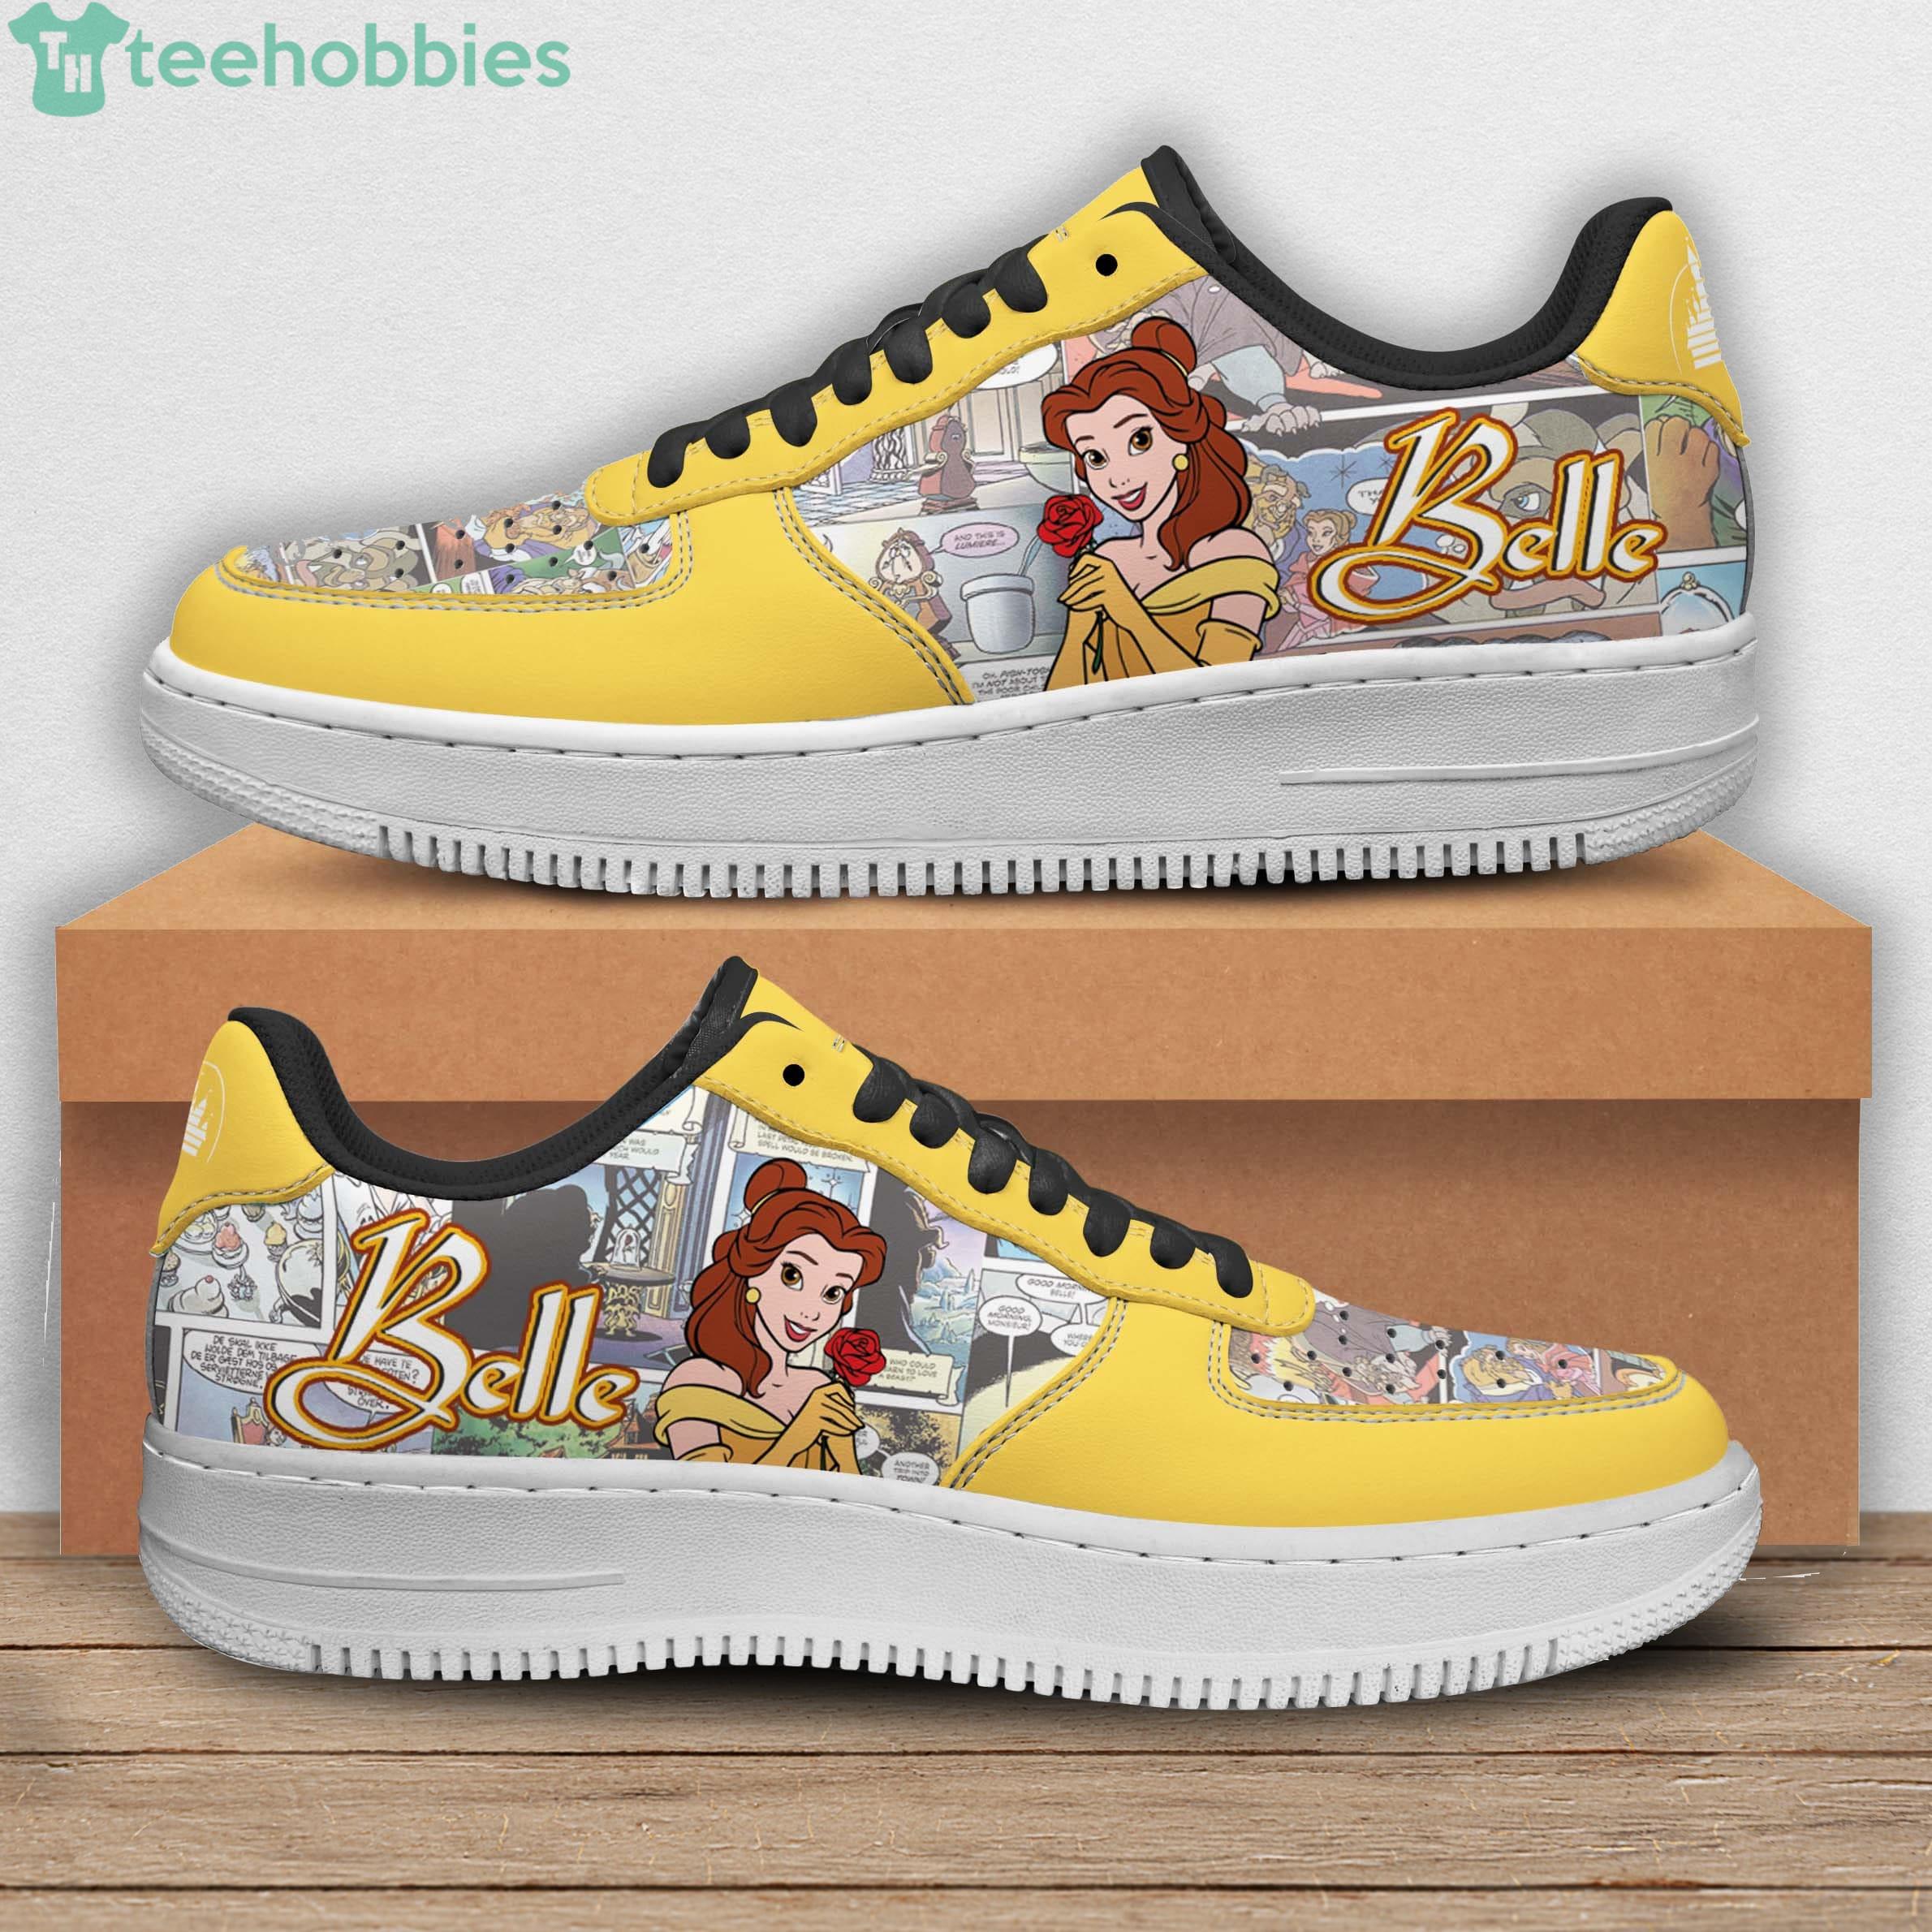 Belle Disney Cartoon Sneakers Air Force Shoes